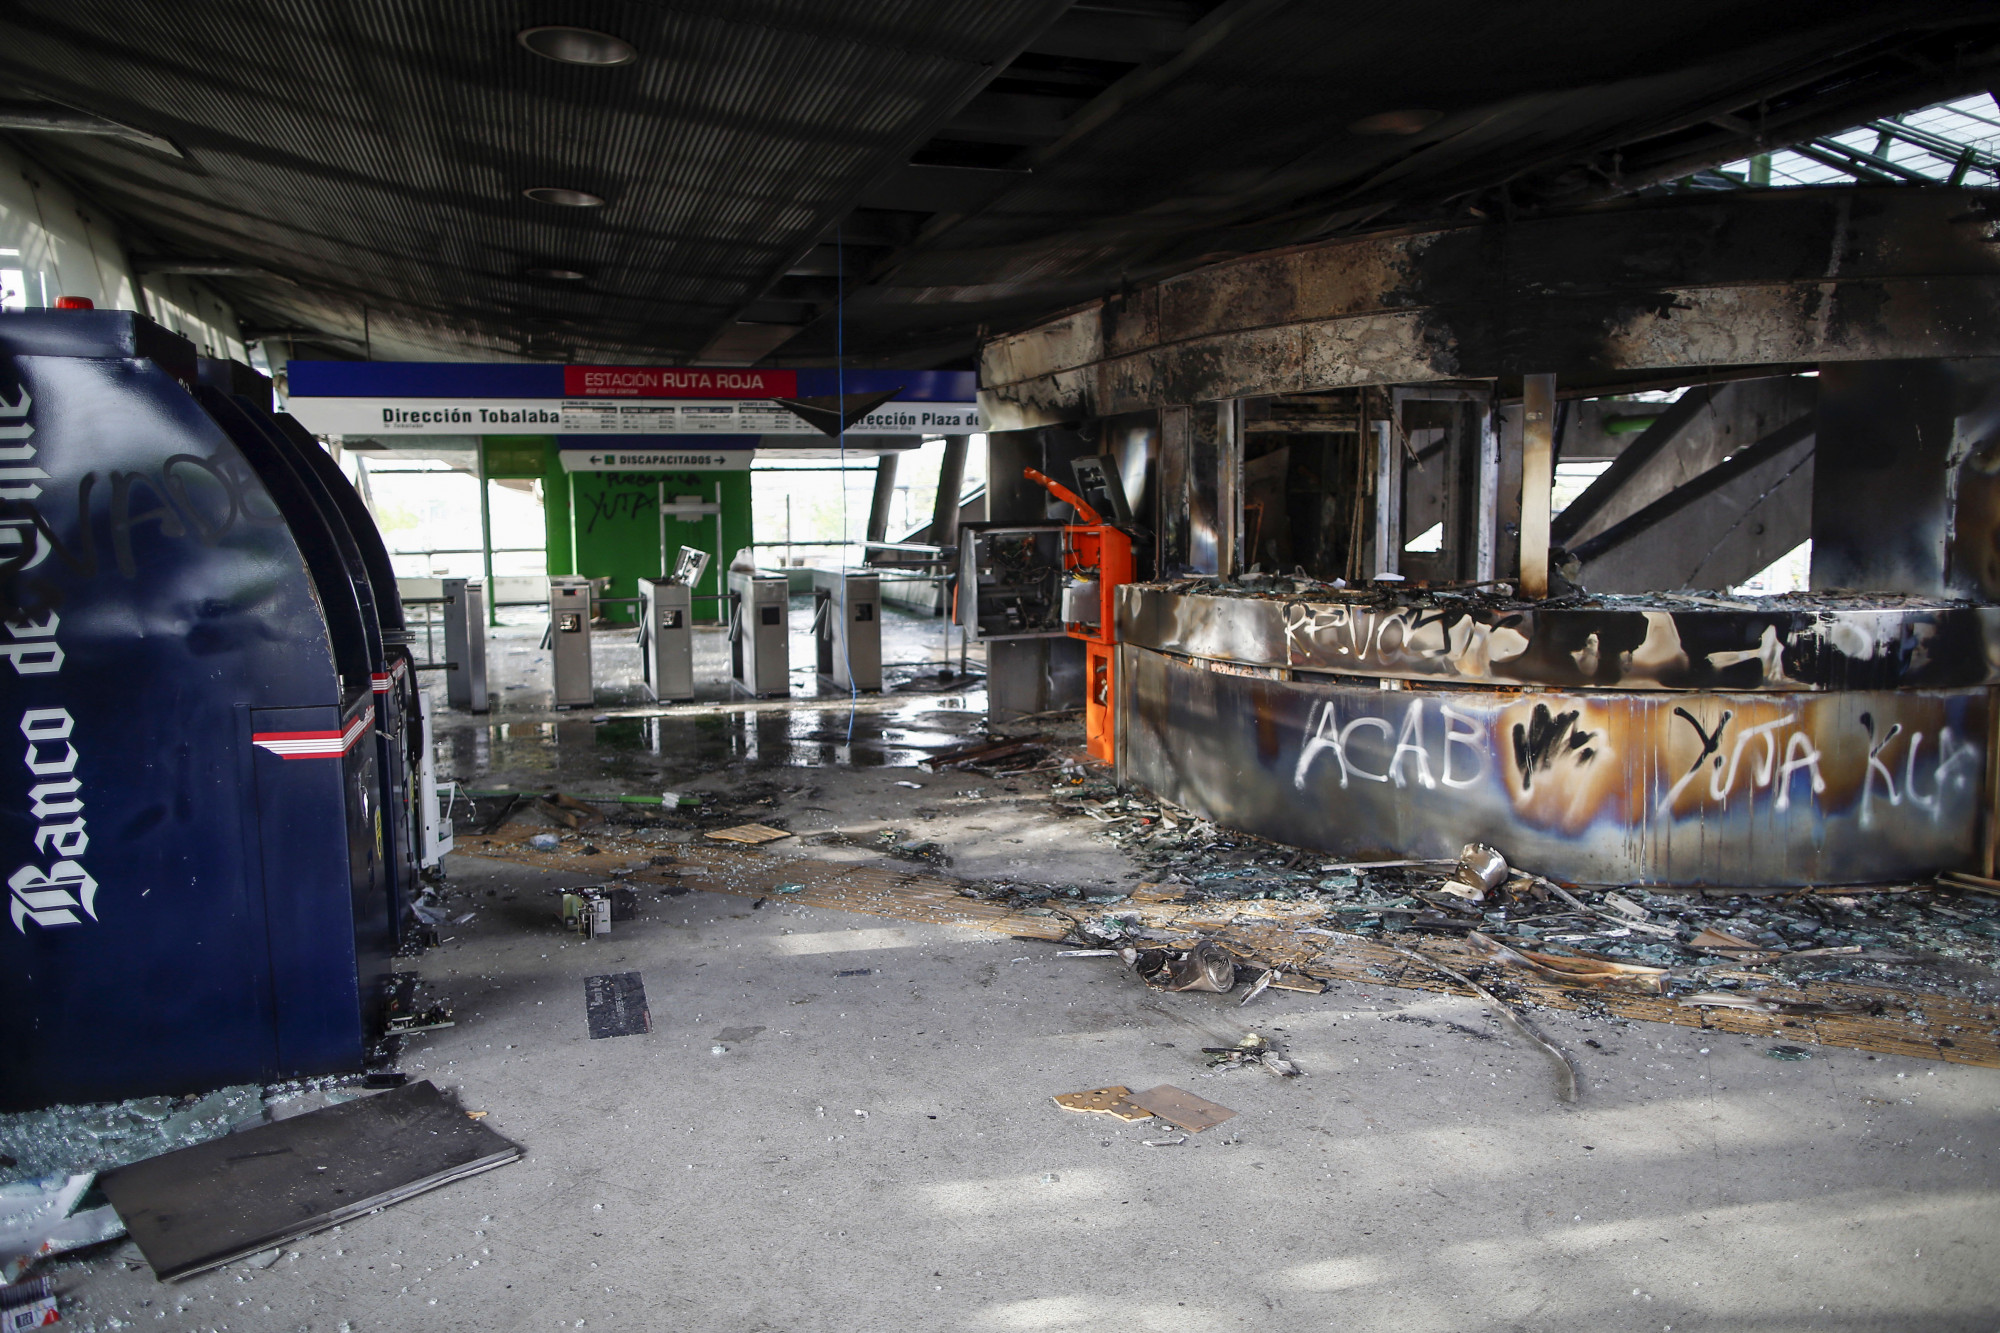 A estação de metrô 'Los Quillares' aparece na foto após incêndio durante os confrontos, em um protesto contra a sonegação de tarifas maciças que paralisaram todo o sistema de metrô na sexta-feira em Santiago, em 19 de outubro de 2019 (Pablo Vera / AFP via Getty Images)